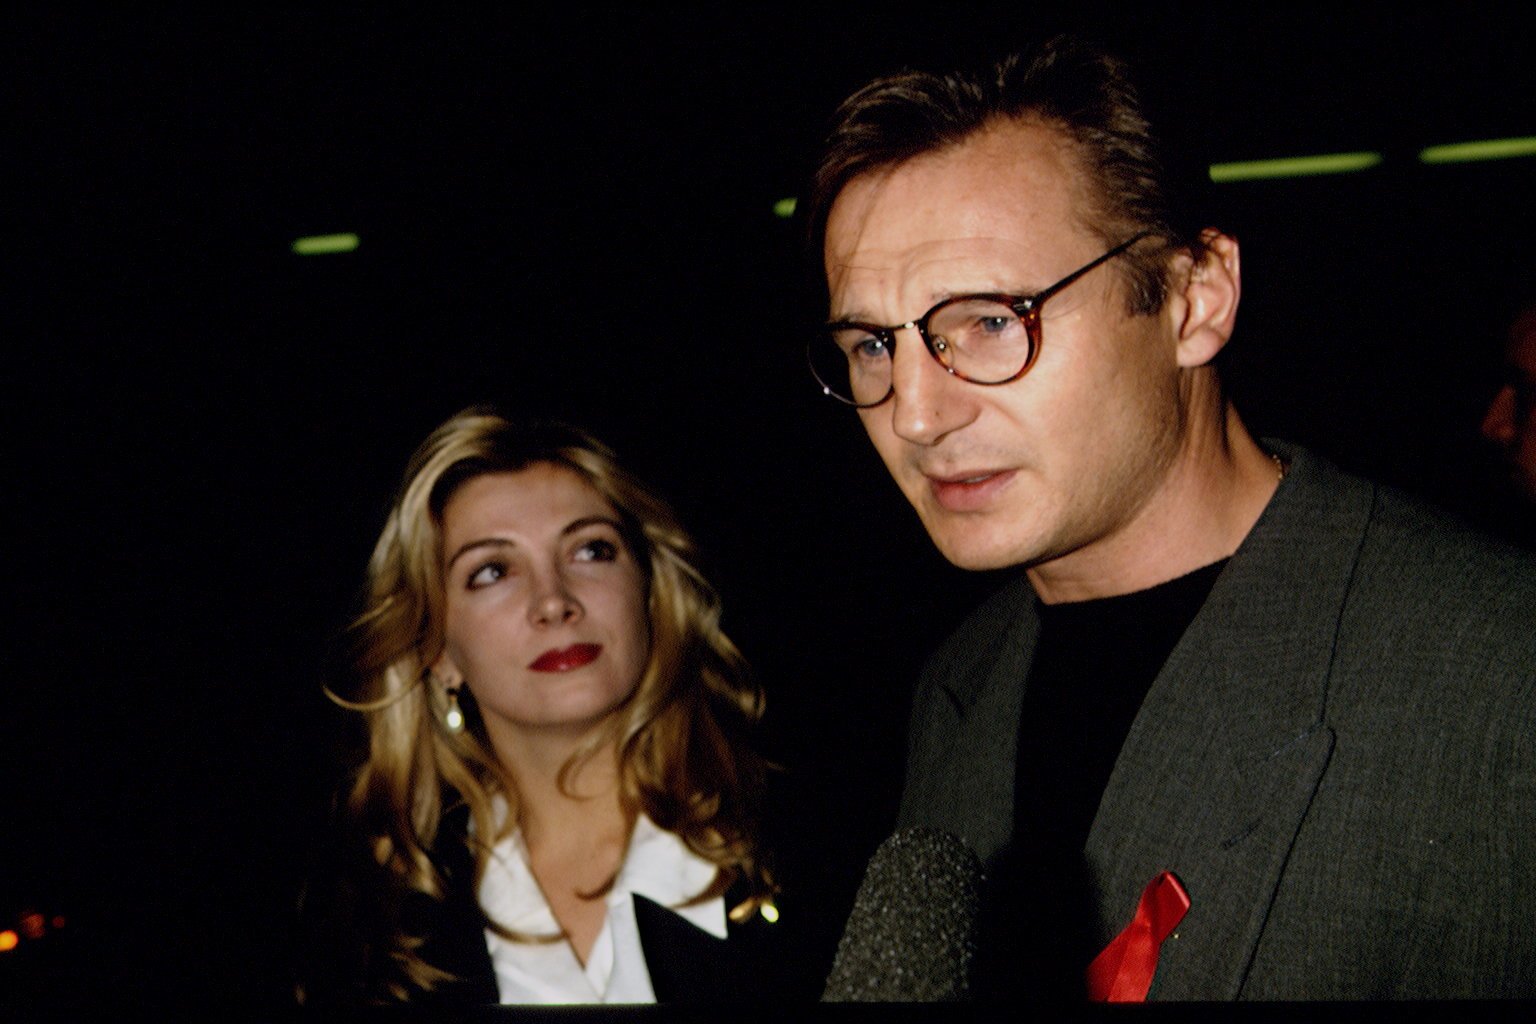 Liam Neeson und Natasha Richardson während der Filmpremiere von "Schindlers Liste" am 1. Dezember 1993 |  Quelle: Getty Images